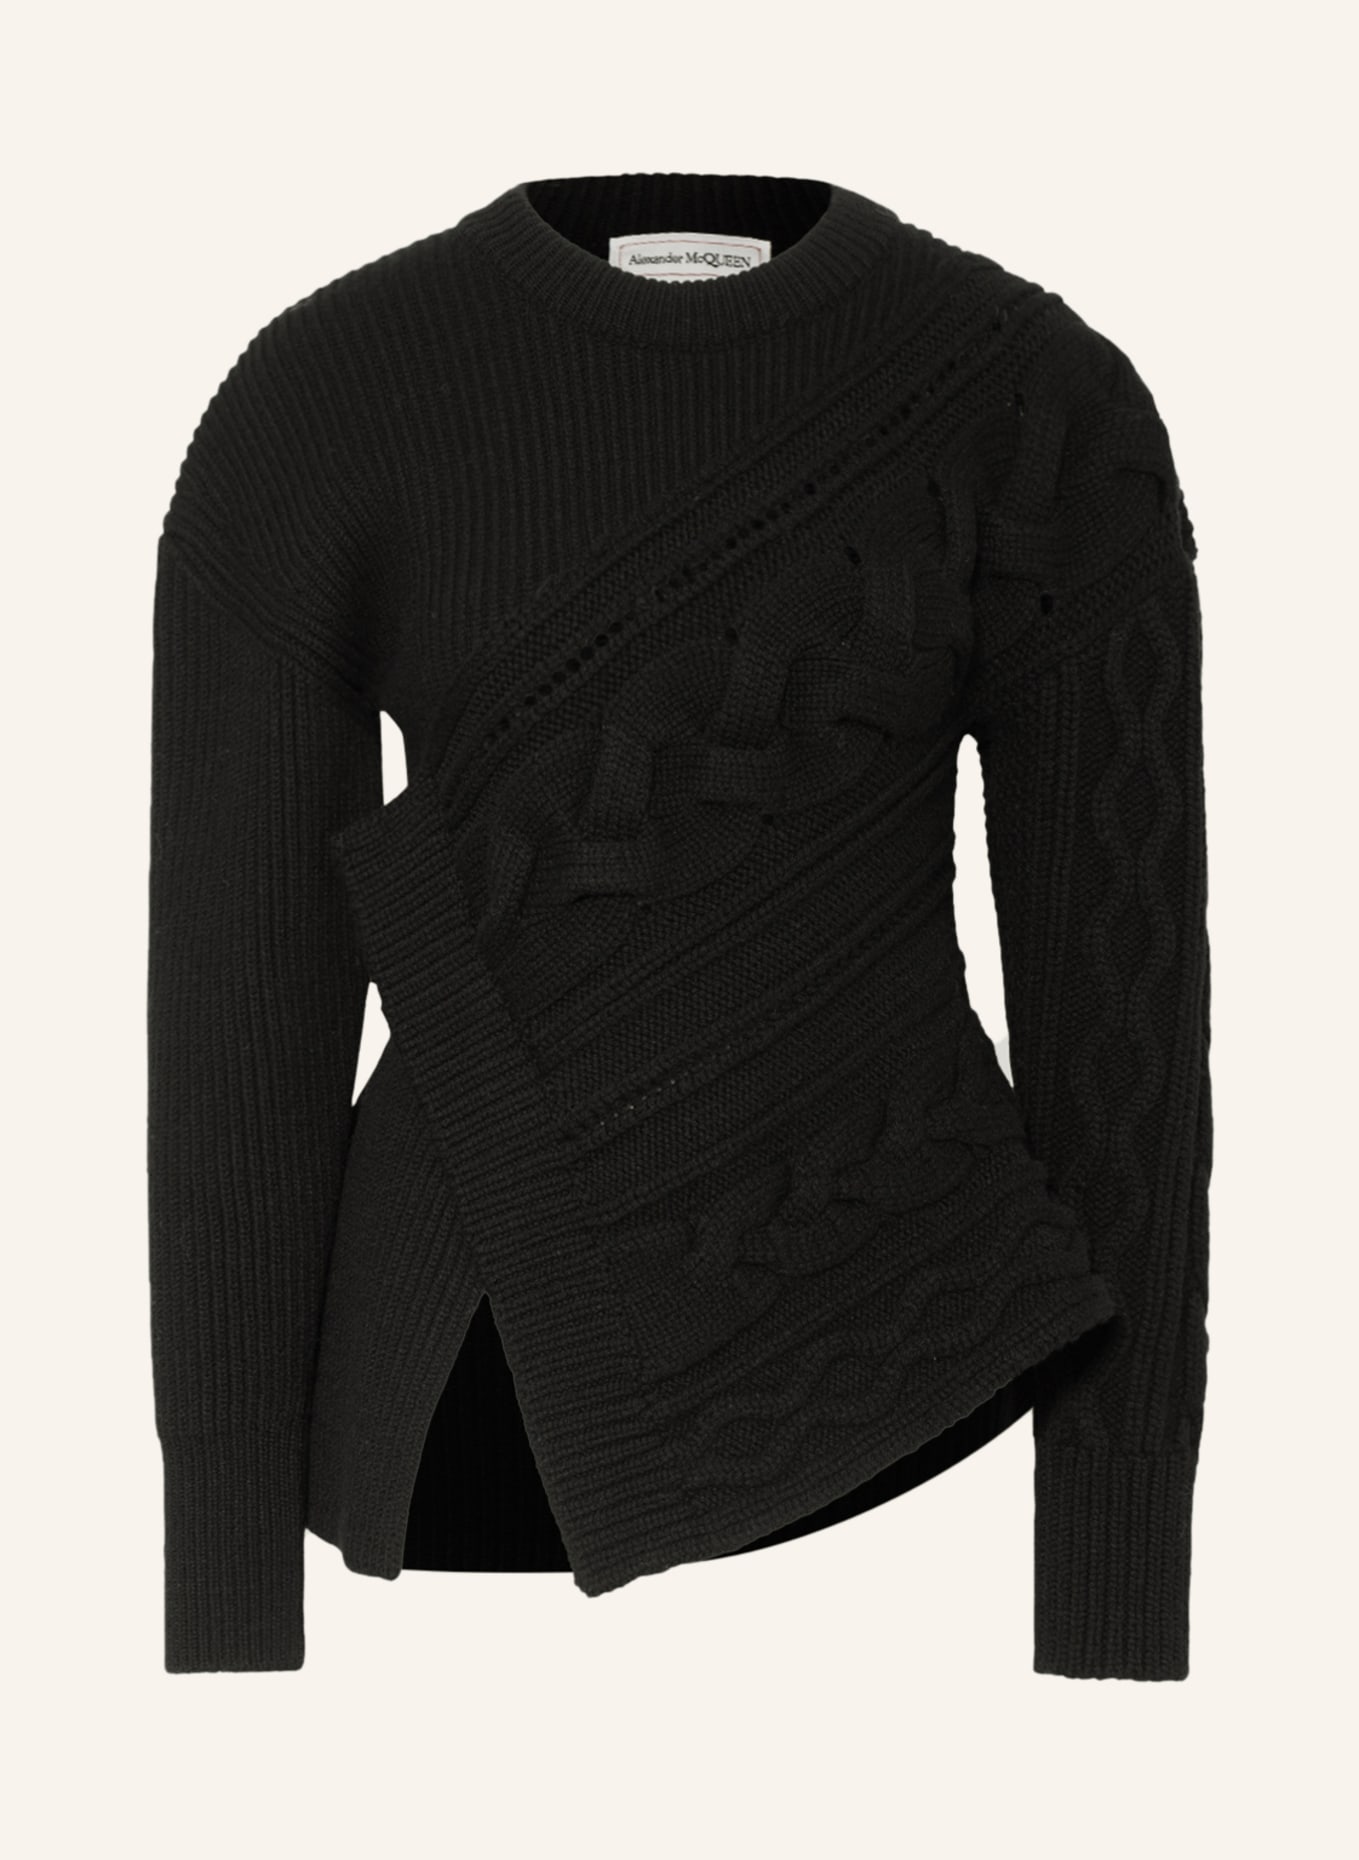 Alexander McQUEEN Sweater, Color: BLACK (Image 1)